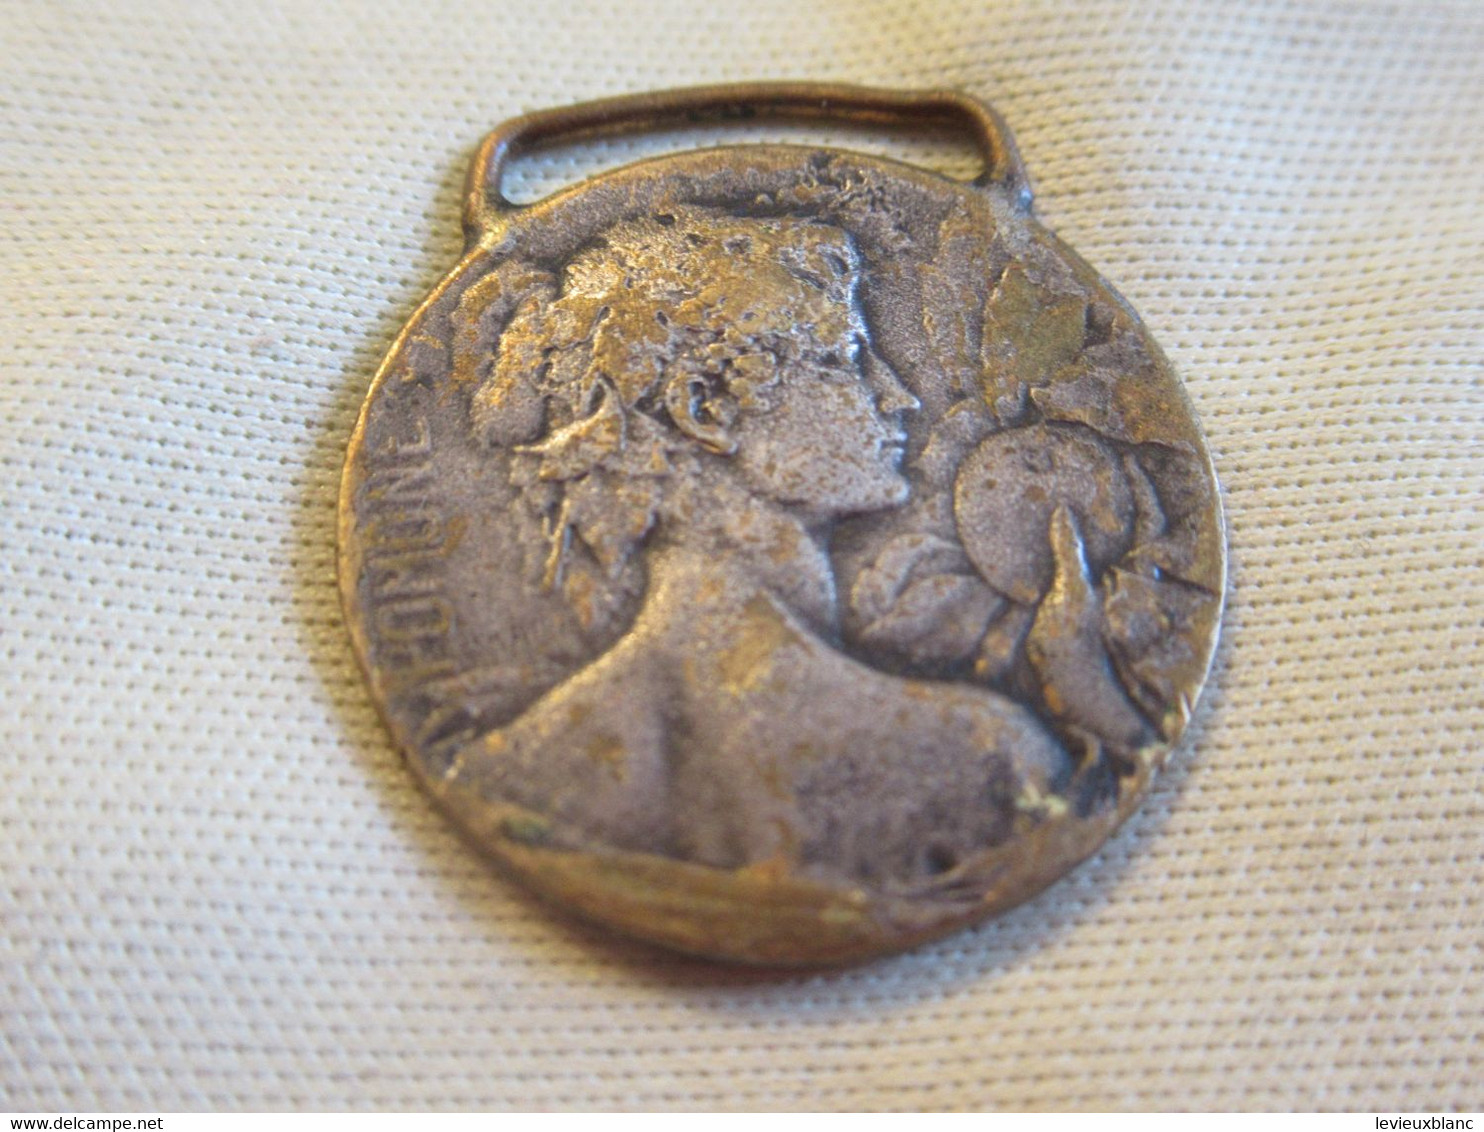 Petite Médaille  Avec Béliere Pour Ruban / Flore & Pomone /Fin XIXéme-début XXème Siècle  BIJ127 - Pendants